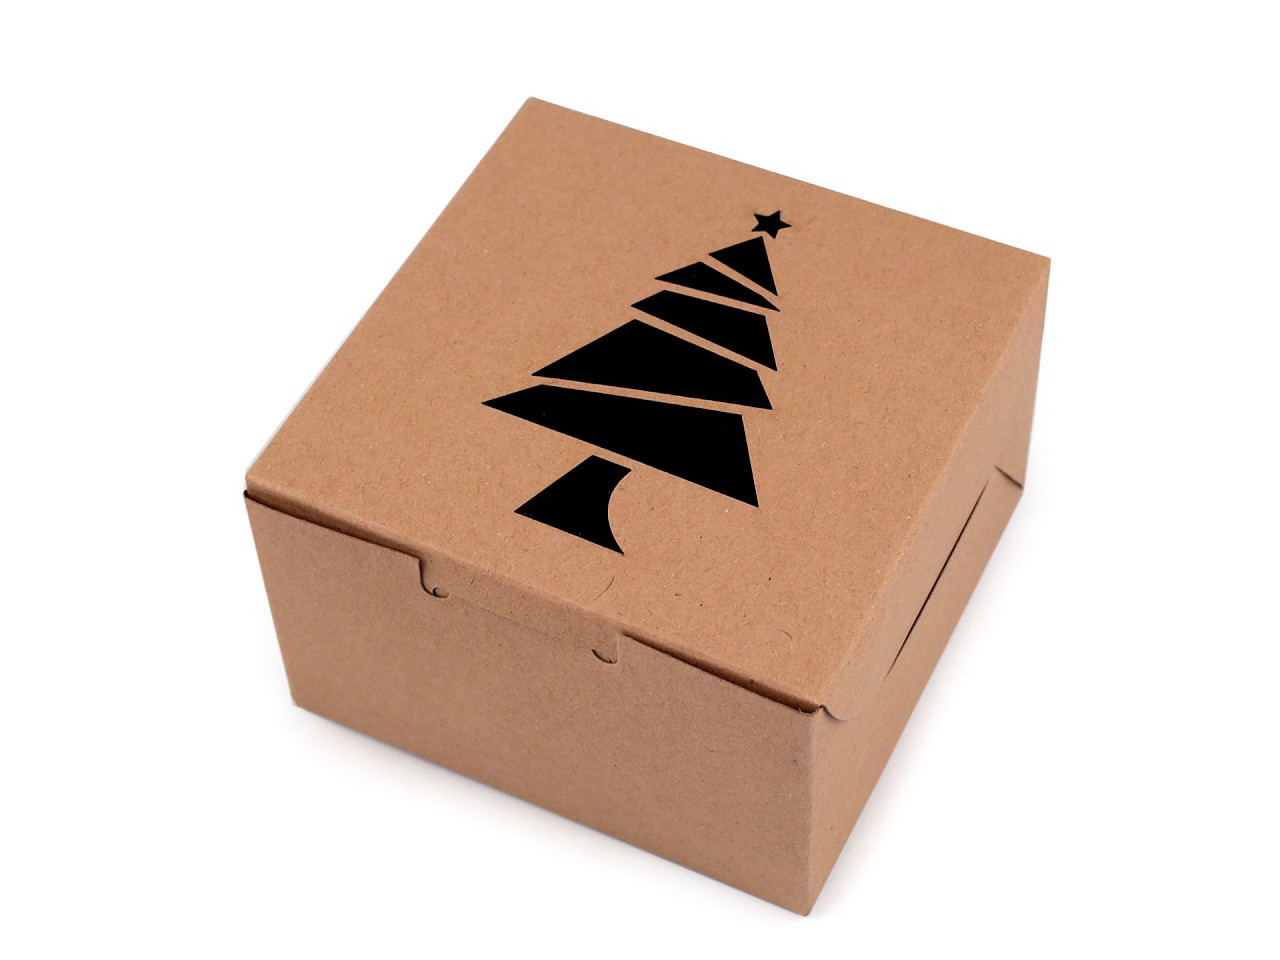 Vánoční papírová krabička s průhledem stromeček, vločka, zvonek, barva 1 hnědá přírodní stromeček